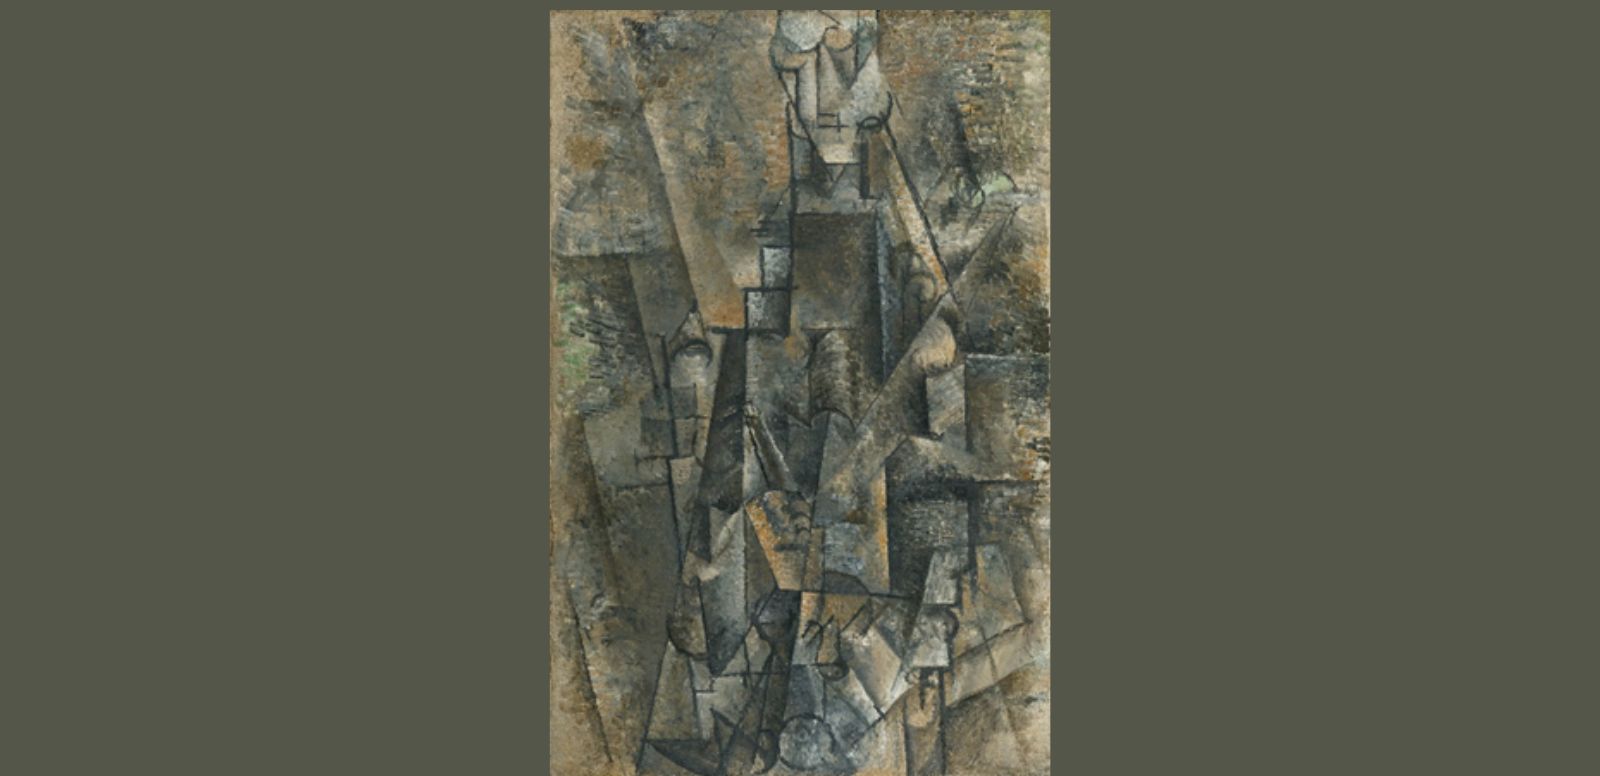 Pablo Picasso, “Hombre con clarinete”, 1911-1912